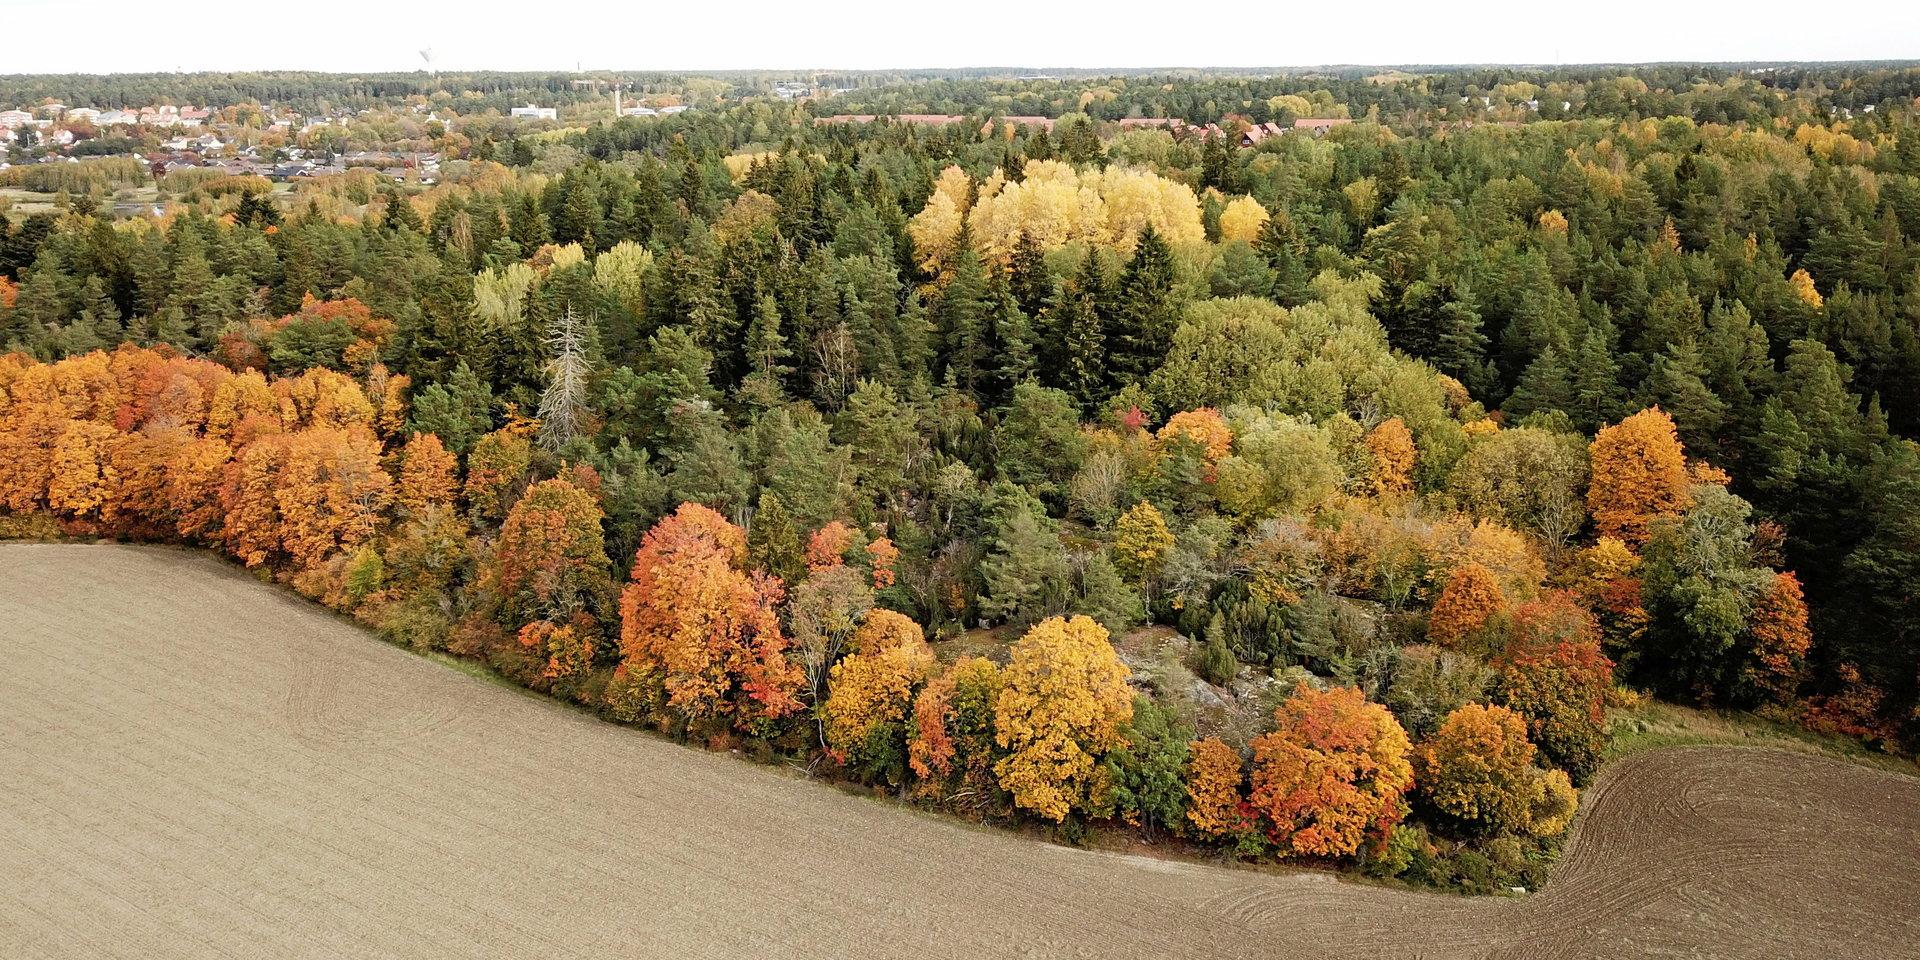 Att exploatera skogsmark och jordbruksmark är inte försvarbart, framhåller skribenten.